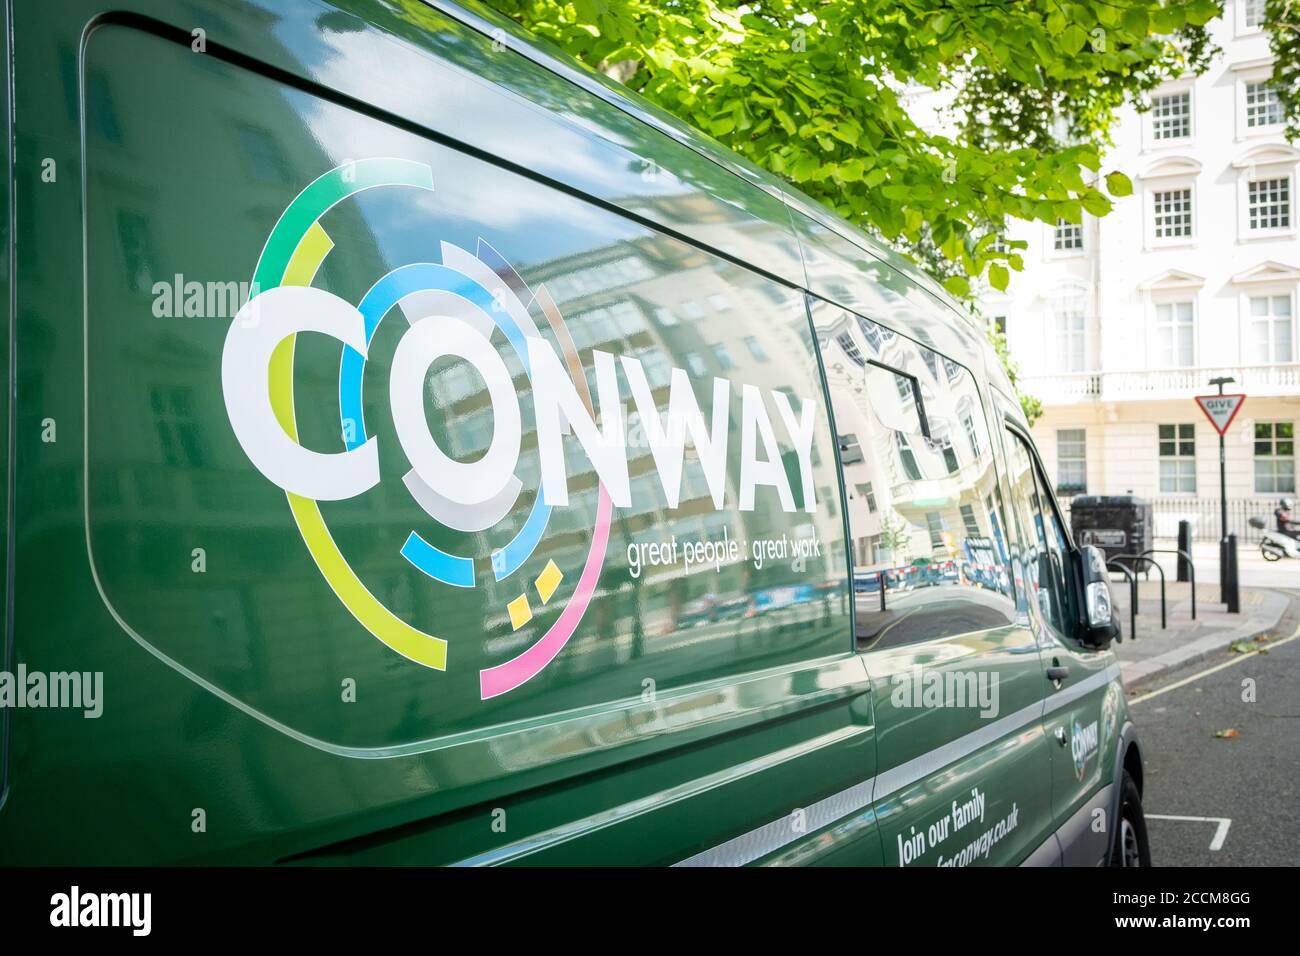 FM Conway van in einer Londoner Straße, einem großen britischen Infrastrukturunternehmen Stockfoto